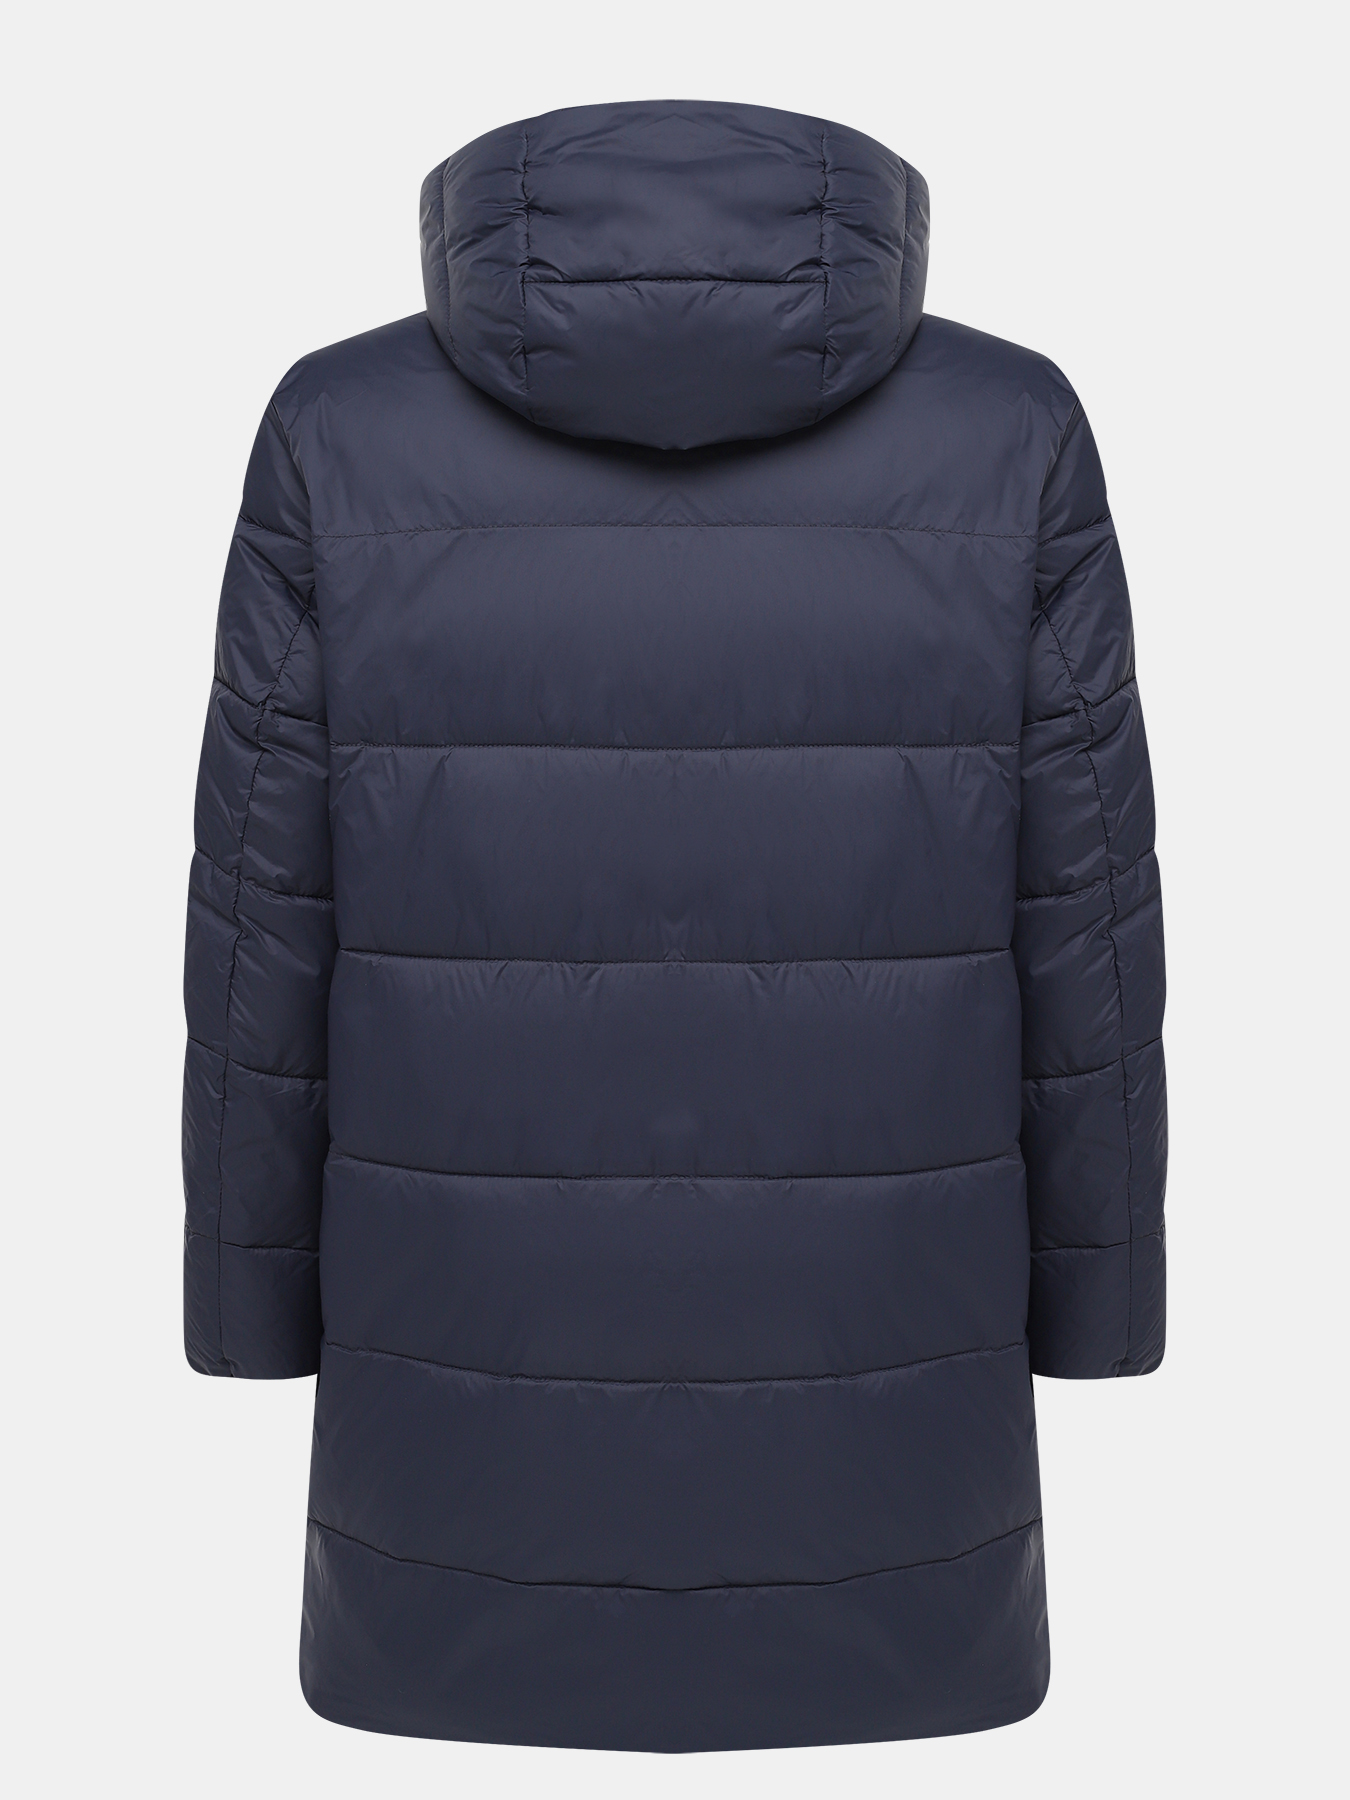 Удлиненная куртка Mati HUGO 426056-045, цвет темно-синий, размер 52-54 - фото 2